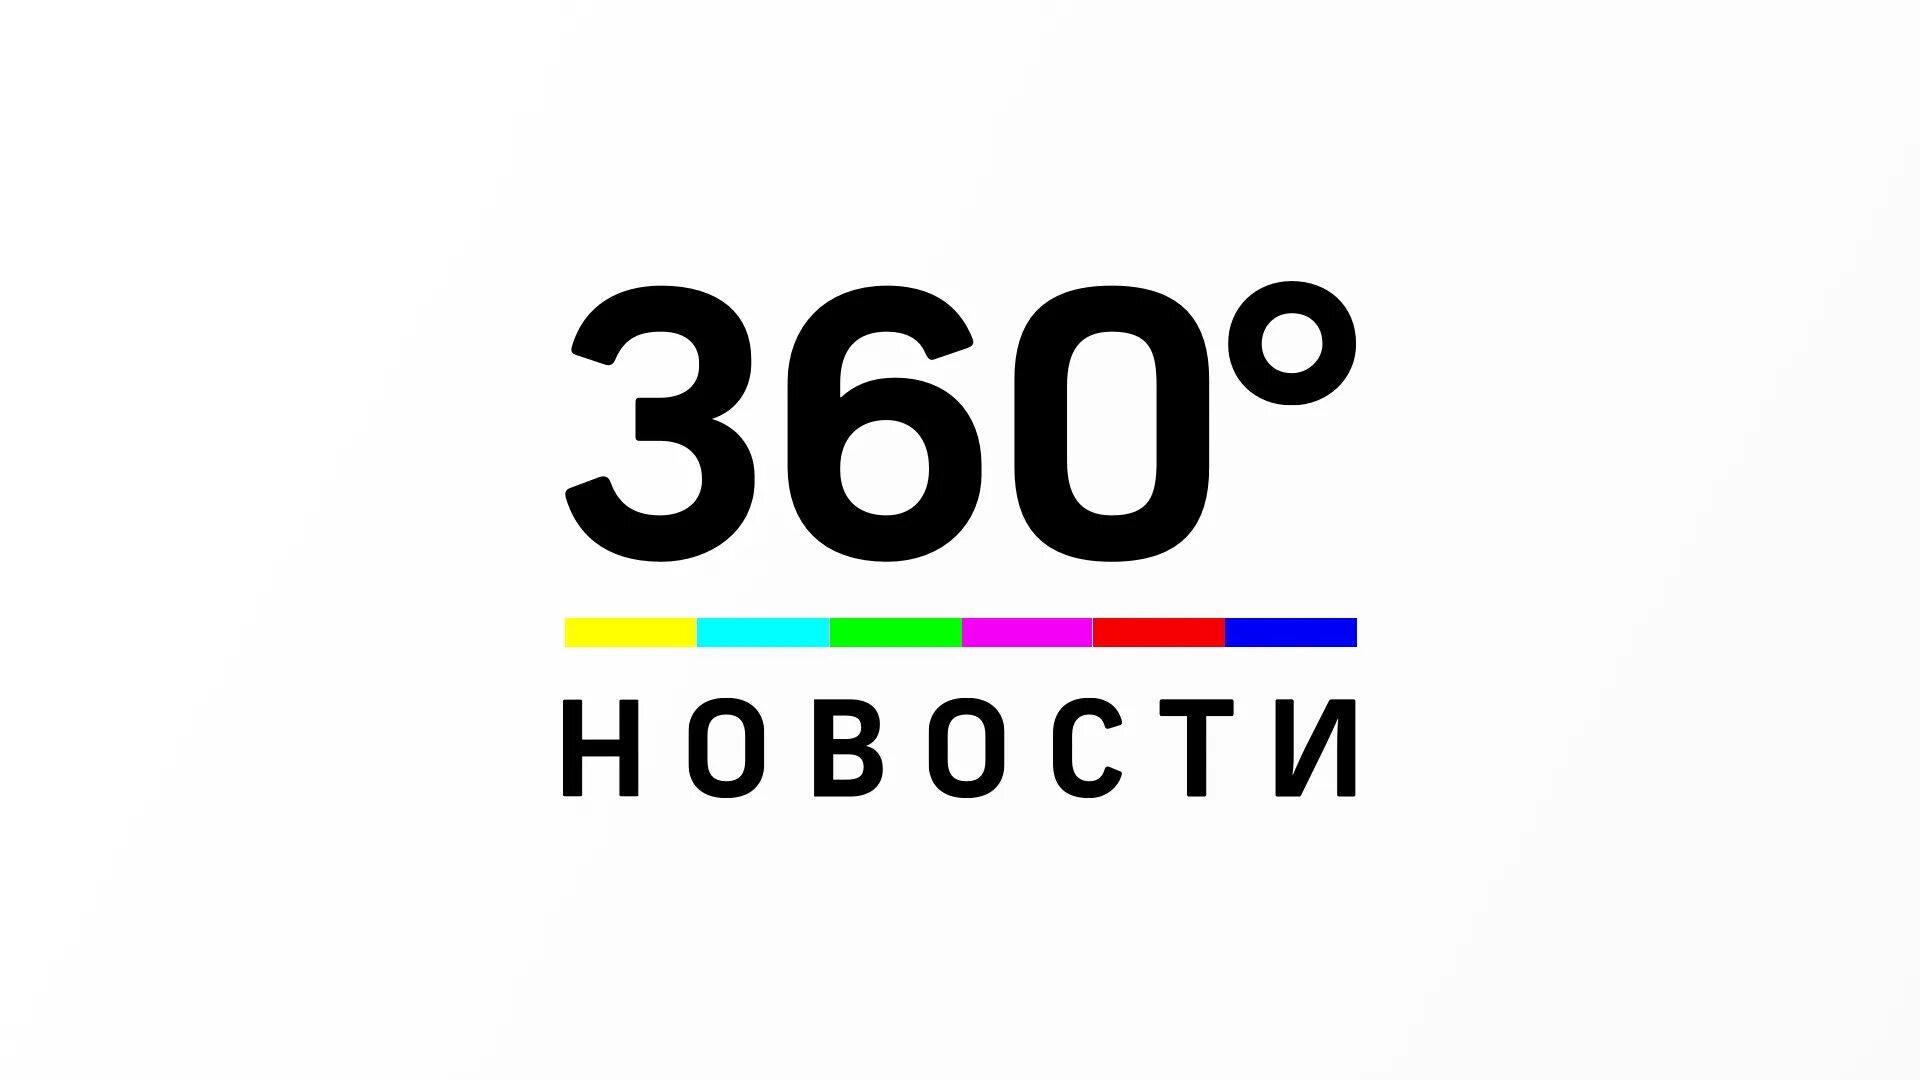 Новости тв читать. Телеканал 360 логотип. 360 Новости логотип. Телеканал 360 новости. 360 Градусов канал.